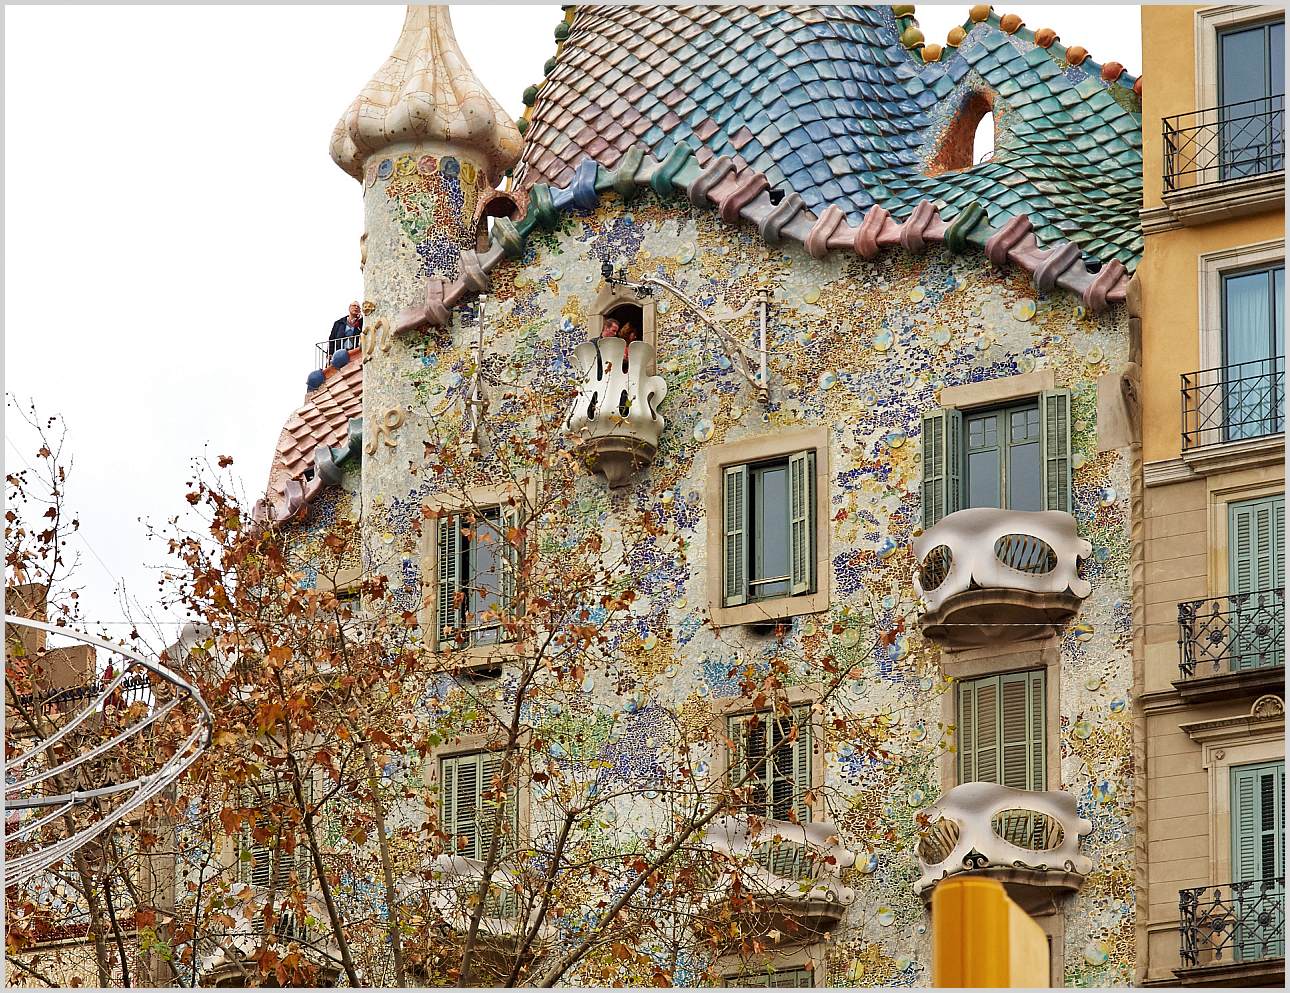 Barcelona/Gaudi Casa Battló